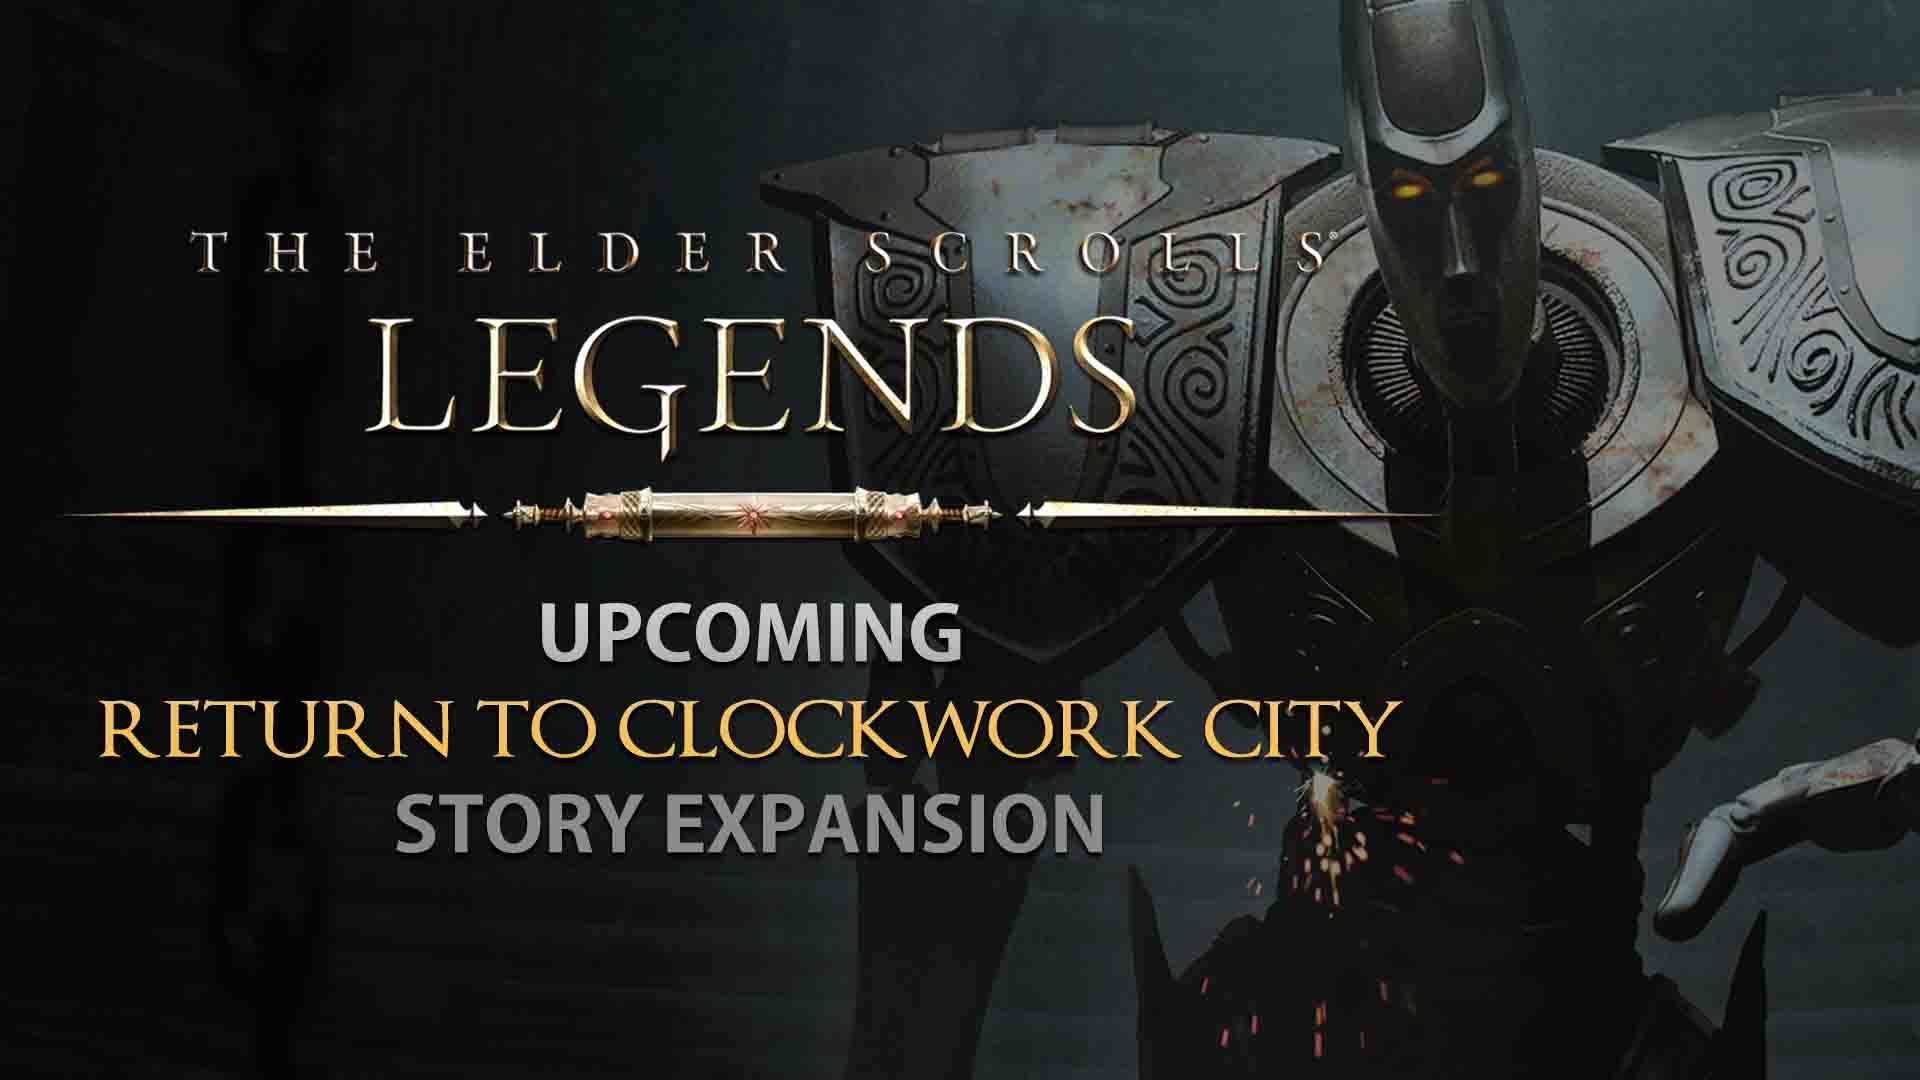 The Elder Scrolls: Legends gets new Return to Clockwork City expansion